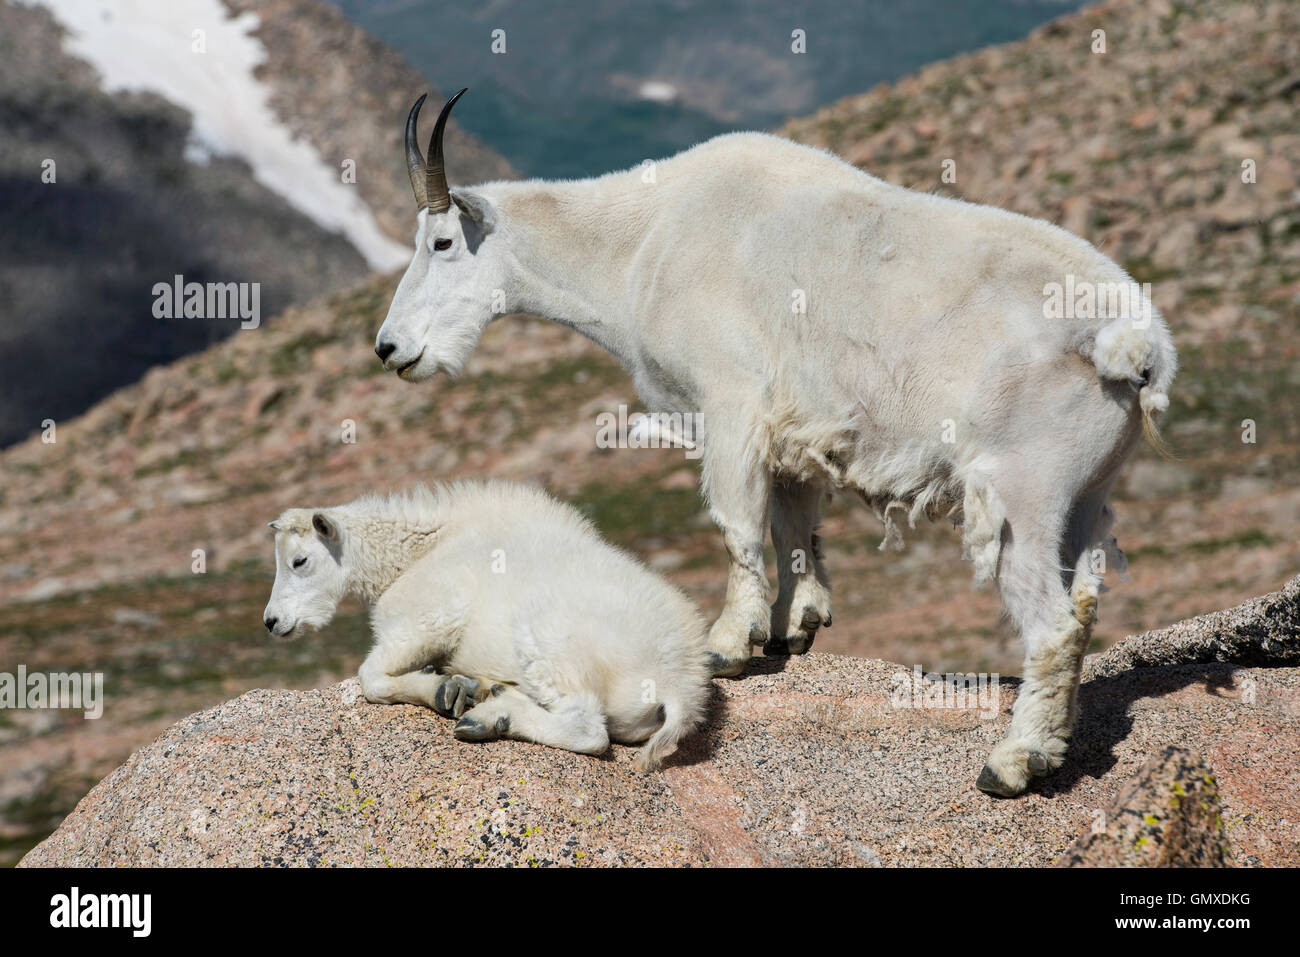 Capre di montagna (Oreamnos americanus) adulto con capretto, Mount Evans, montagne rocciose, Colorado, STATI UNITI D'AMERICA Foto Stock